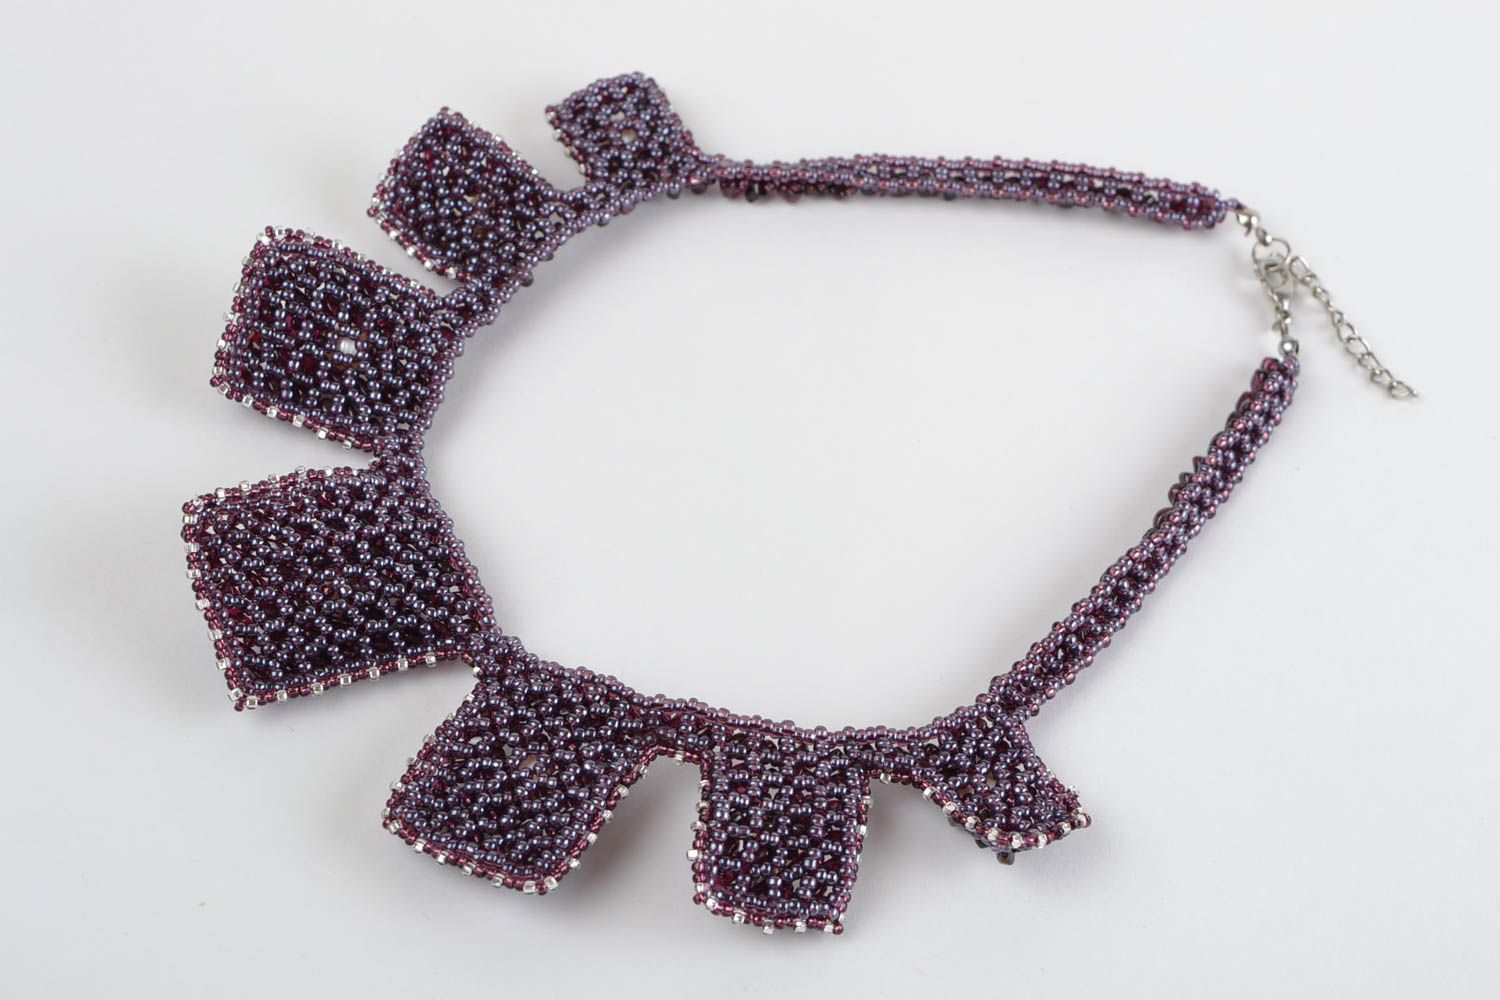 Ожерелье из бисера и натурального камня плетеное красивое ручной работы фото 5